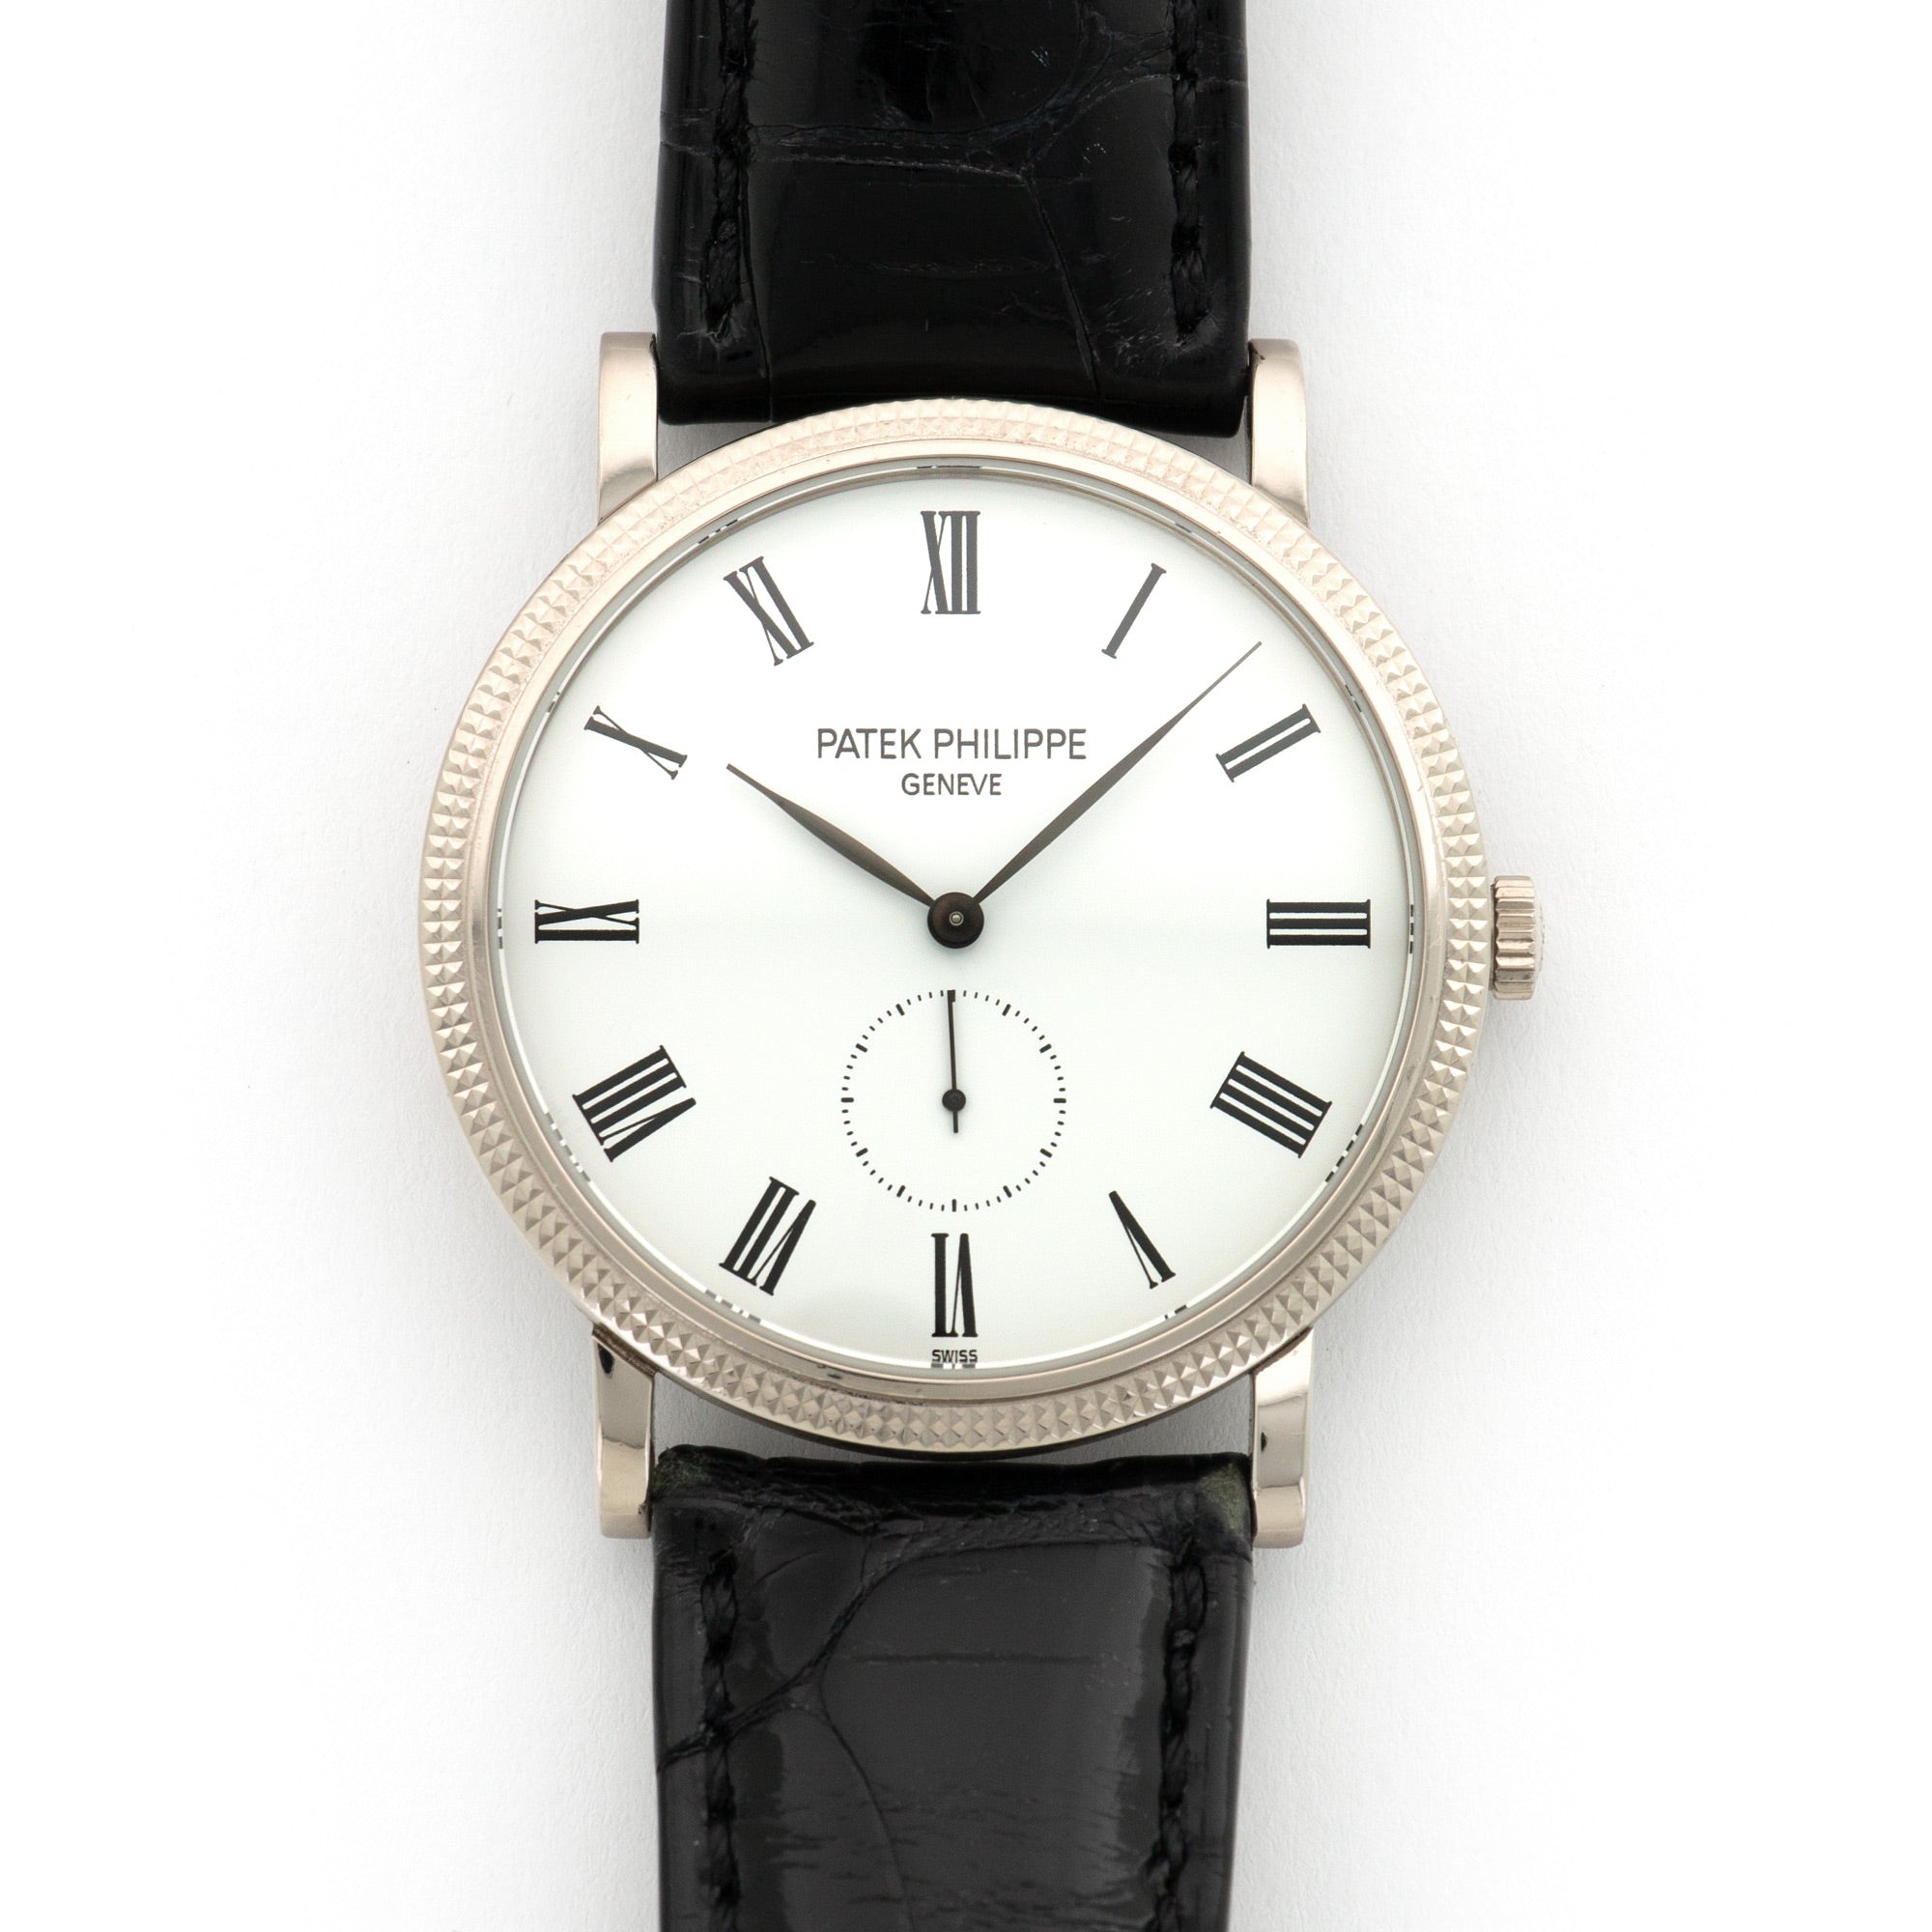 Patek Philippe - Patek Philippe White Gold Calatrava Watch Ref. 5119 - The Keystone Watches